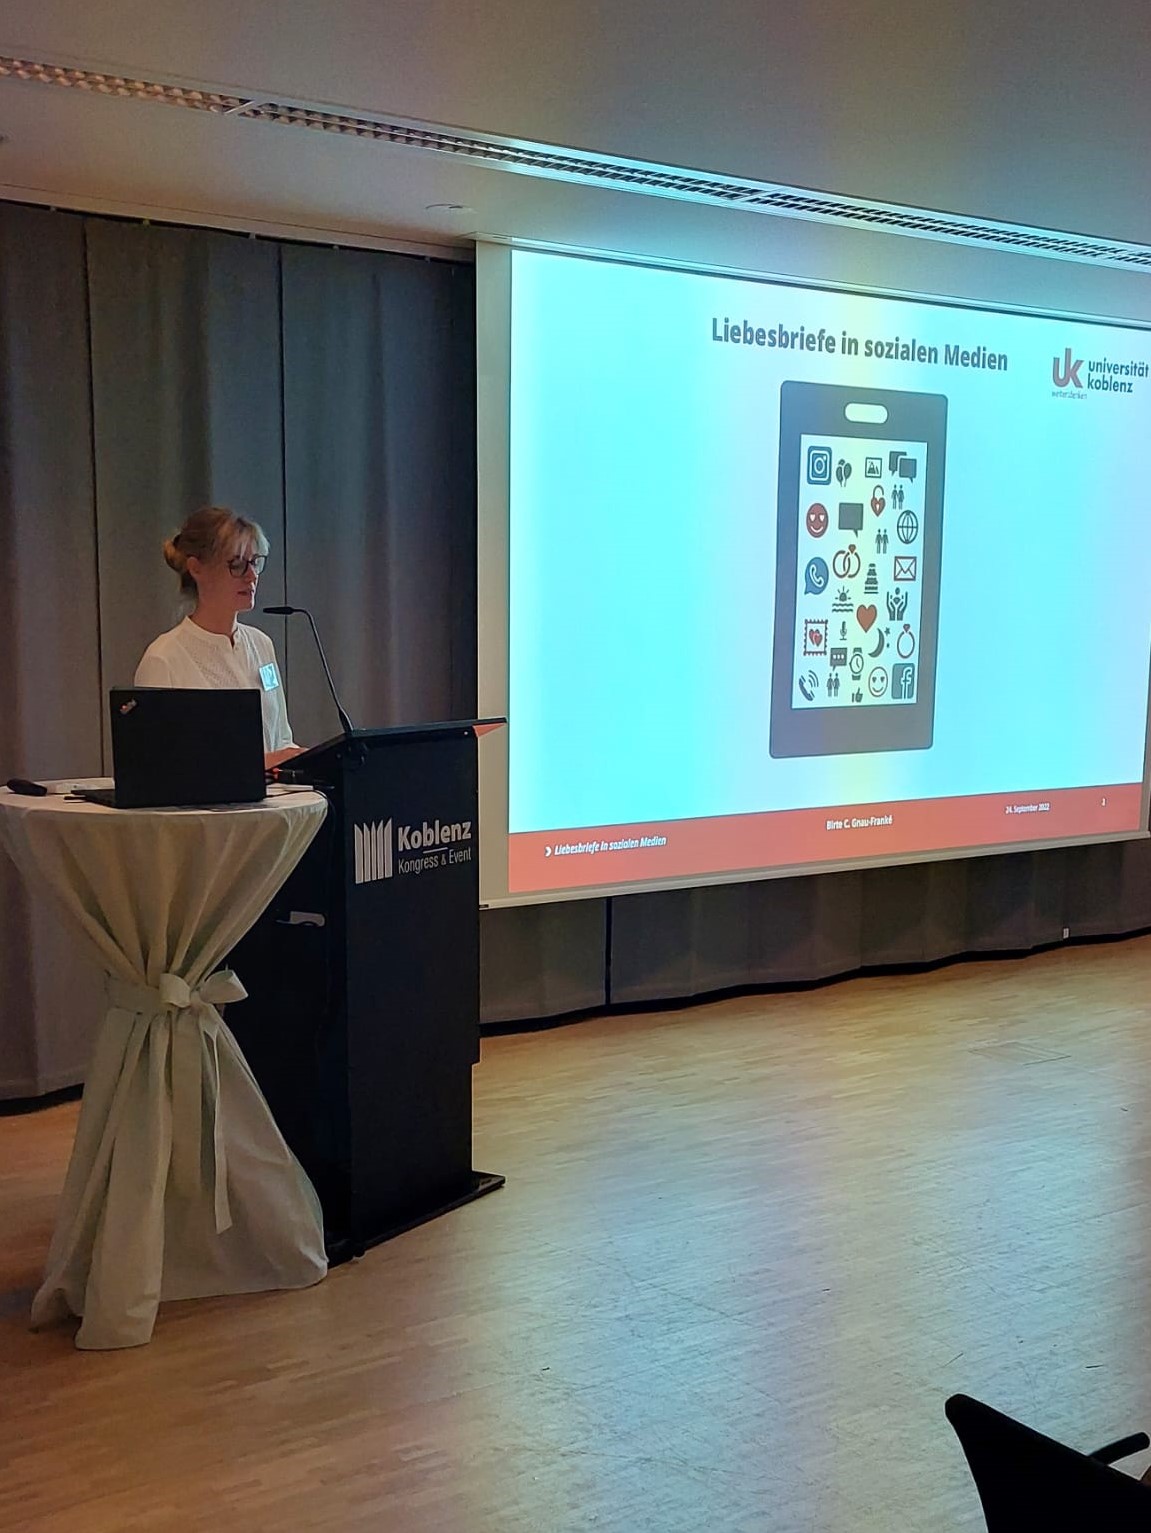 Geschäftsführende Leiterin des Liebesbriefarchivs Gnau-Franké am Rednerpult hält einen wissenschaftlichen Vortrag über Liebesbriefe in sozialen Medien auf der Langen Nacht der Liebesbriefe in Koblenz